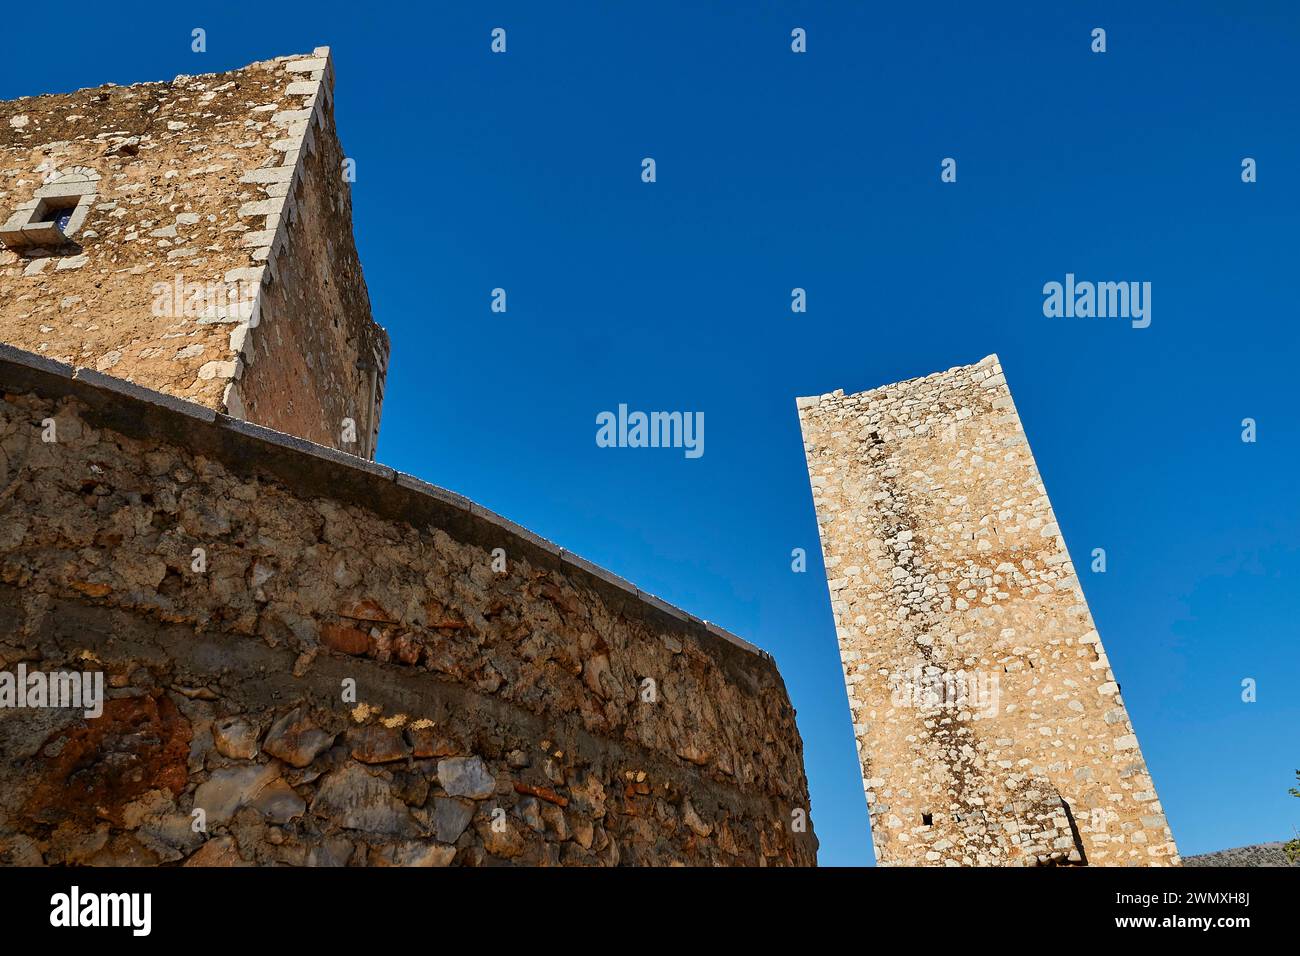 Mittelalterlicher Turm, der in einen klaren blauen Himmel hinaufragt, Flomochori, Wohnturmdorf, Halbinsel Mani, Peloponnes, Griechenland Stockfoto